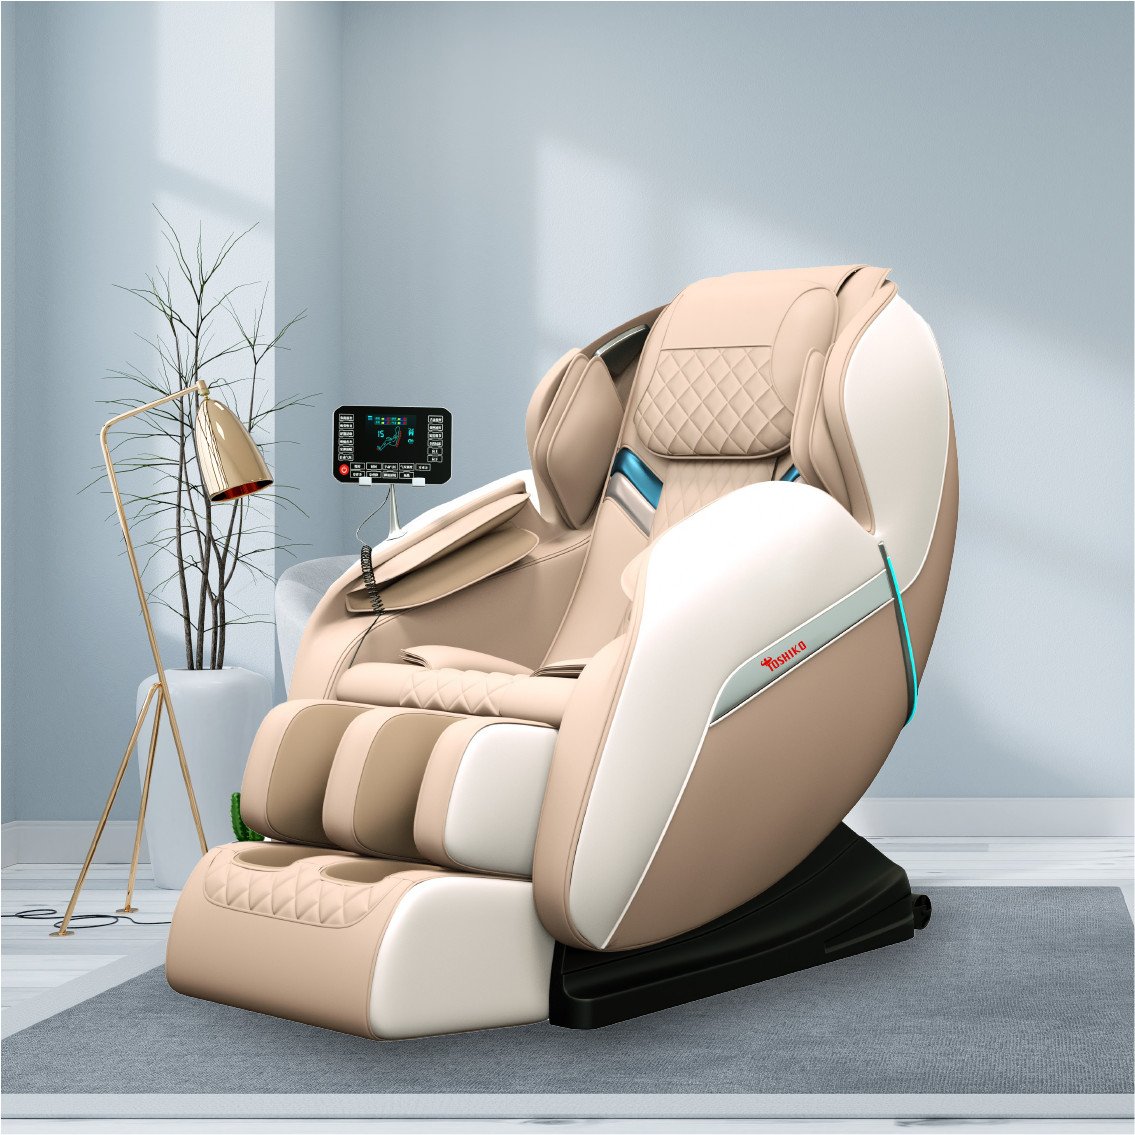 Ghế massage giá rẻ tại Nghệ An bán chạy - Toshiko T21